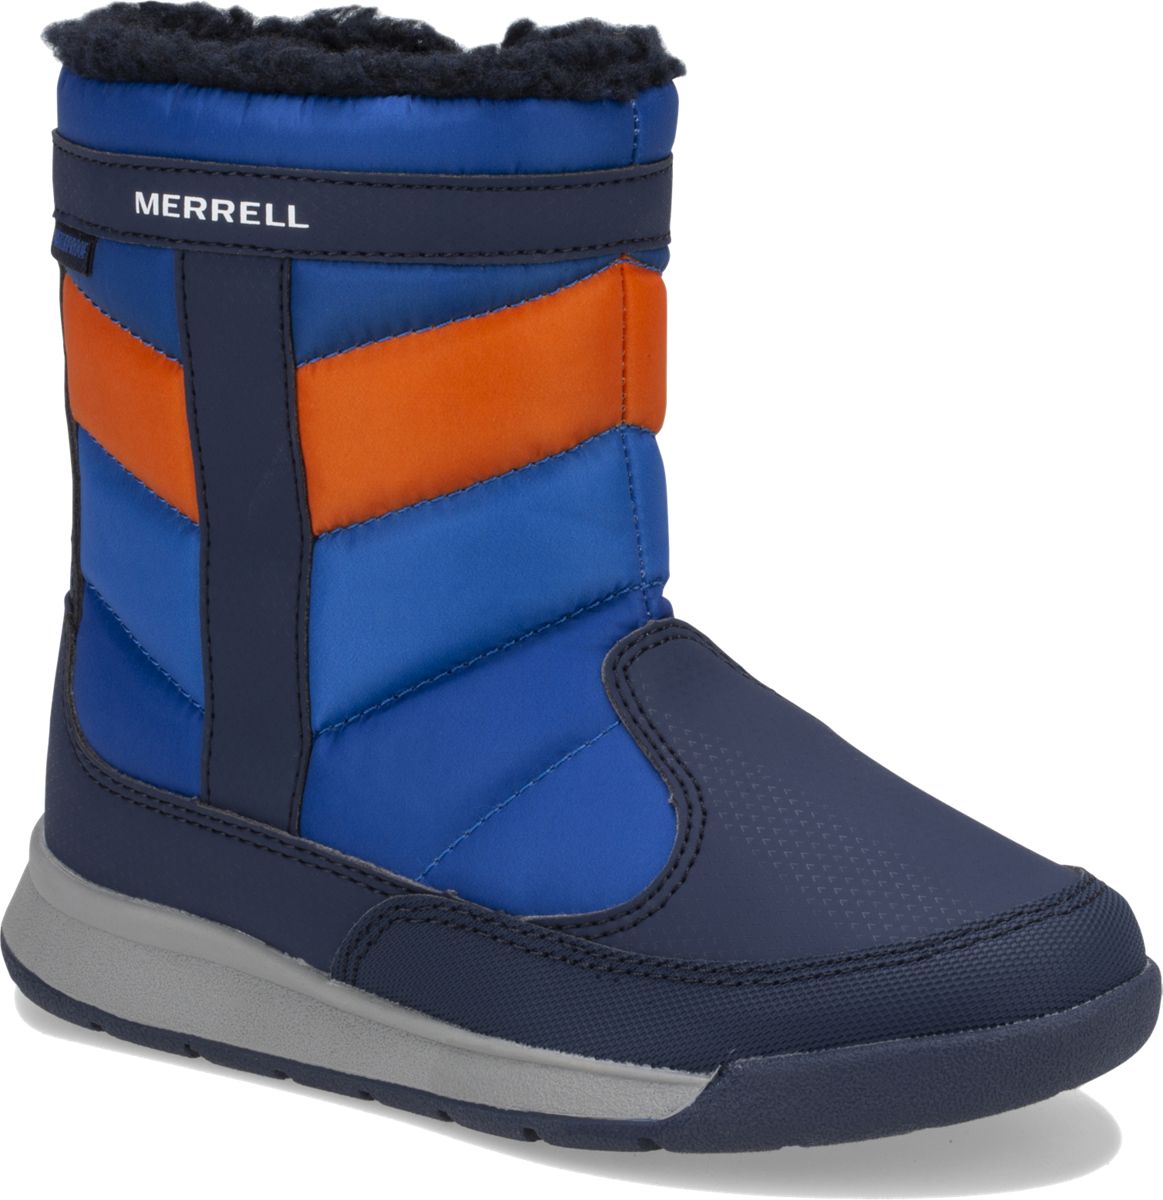 merrell alpine waterproof boot